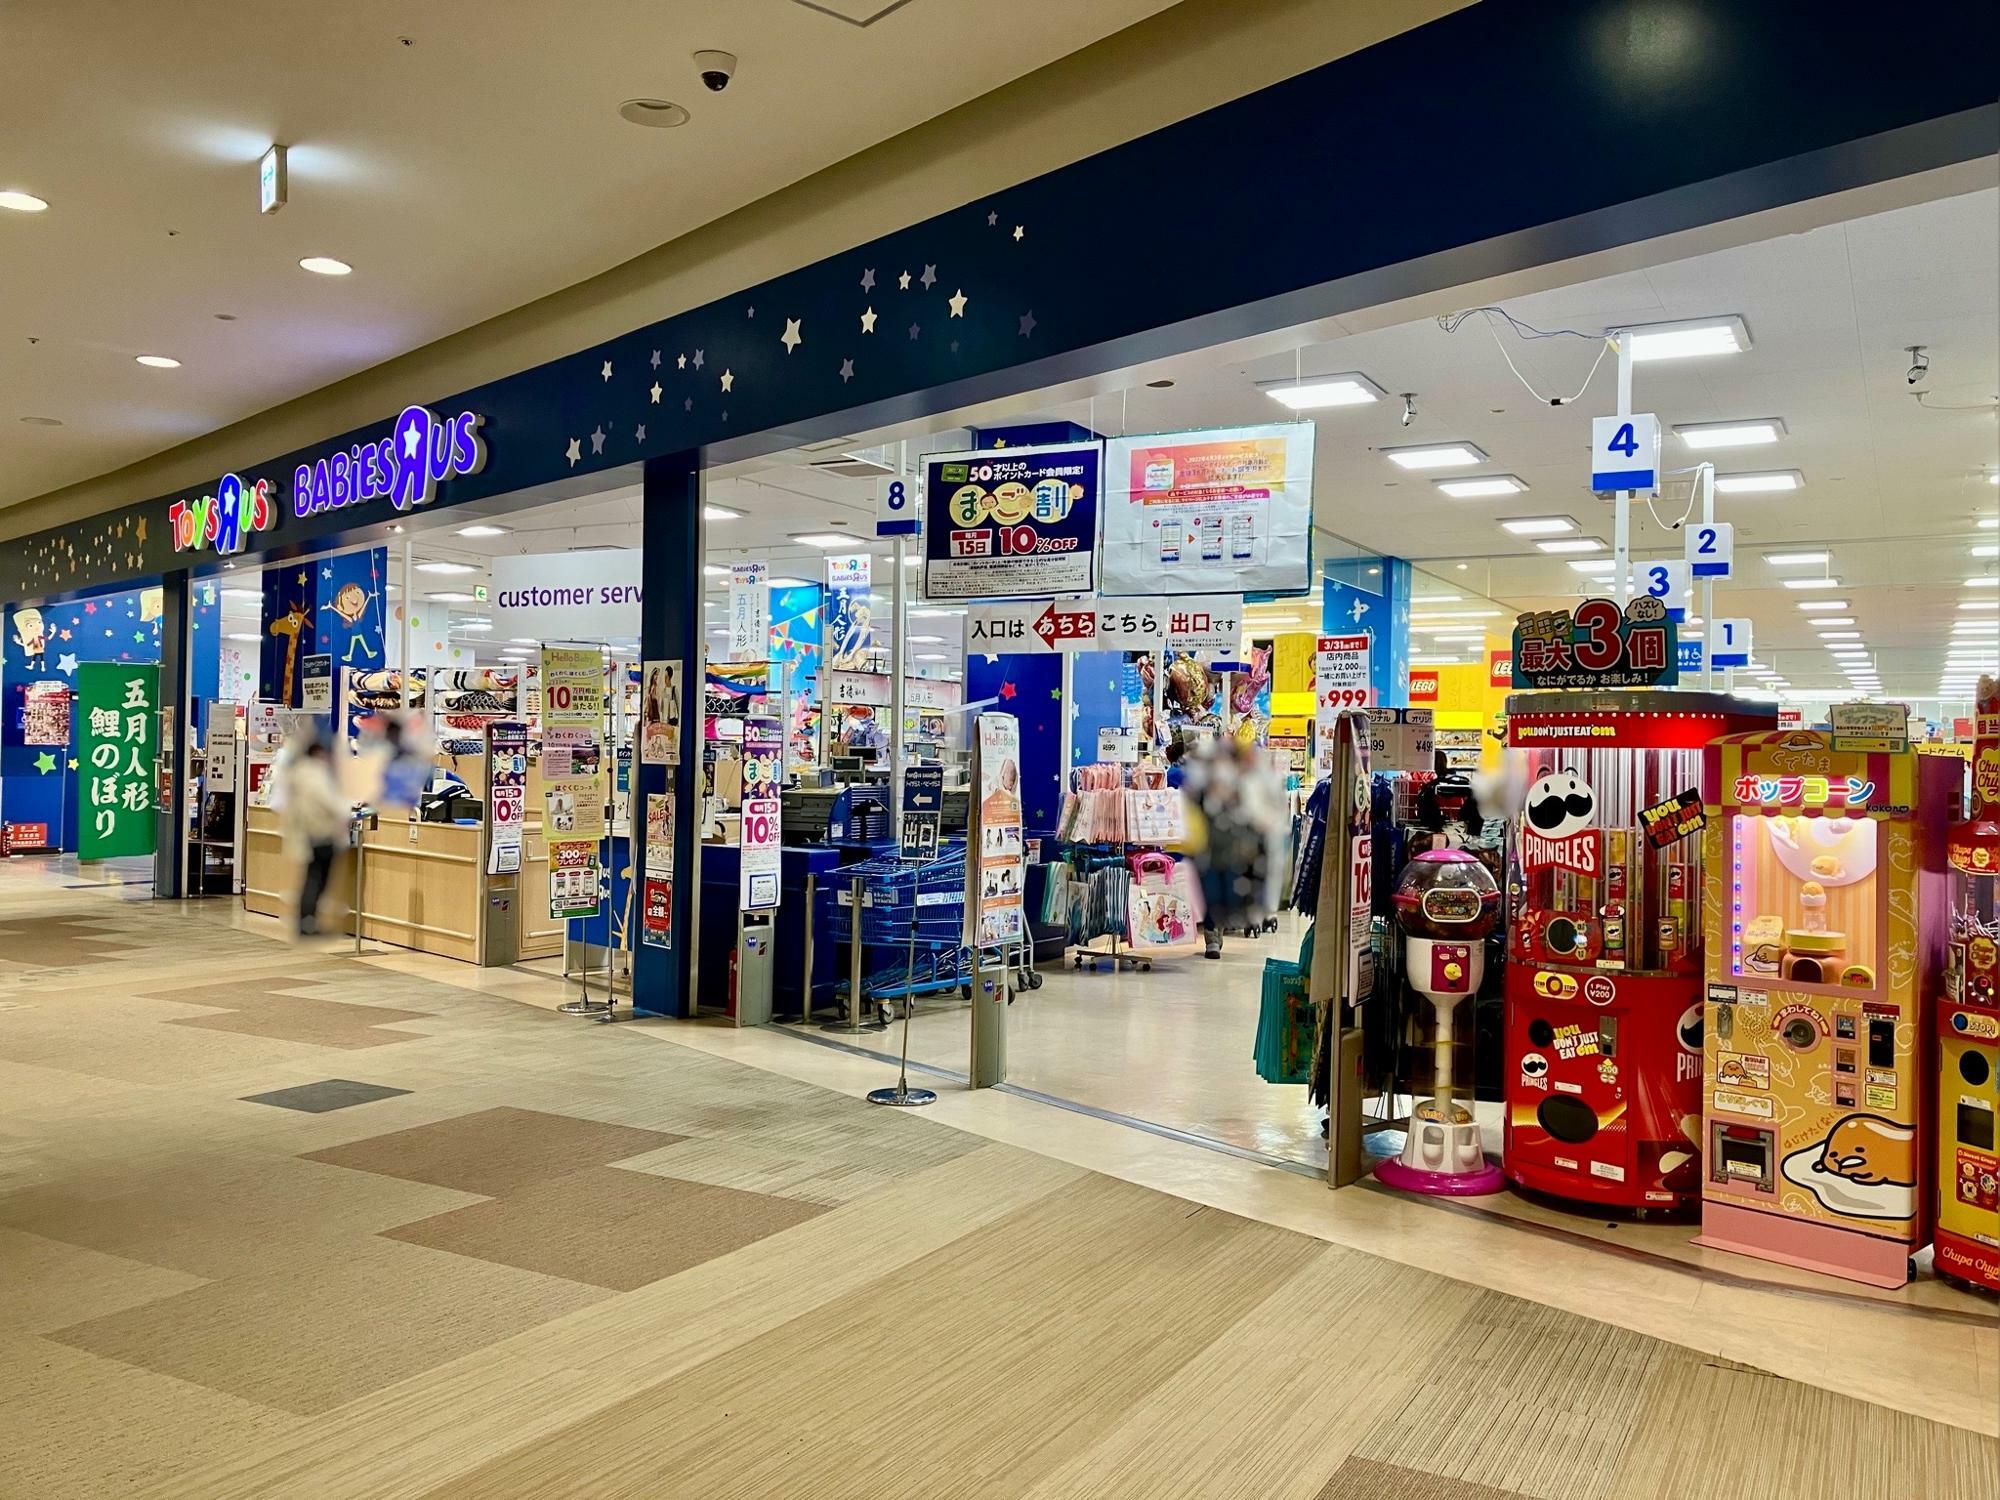 「トイザらス・ベビーザらス 札幌店」は出入口が分かれています。店舗に向かって左側が入口、右側が出口です。